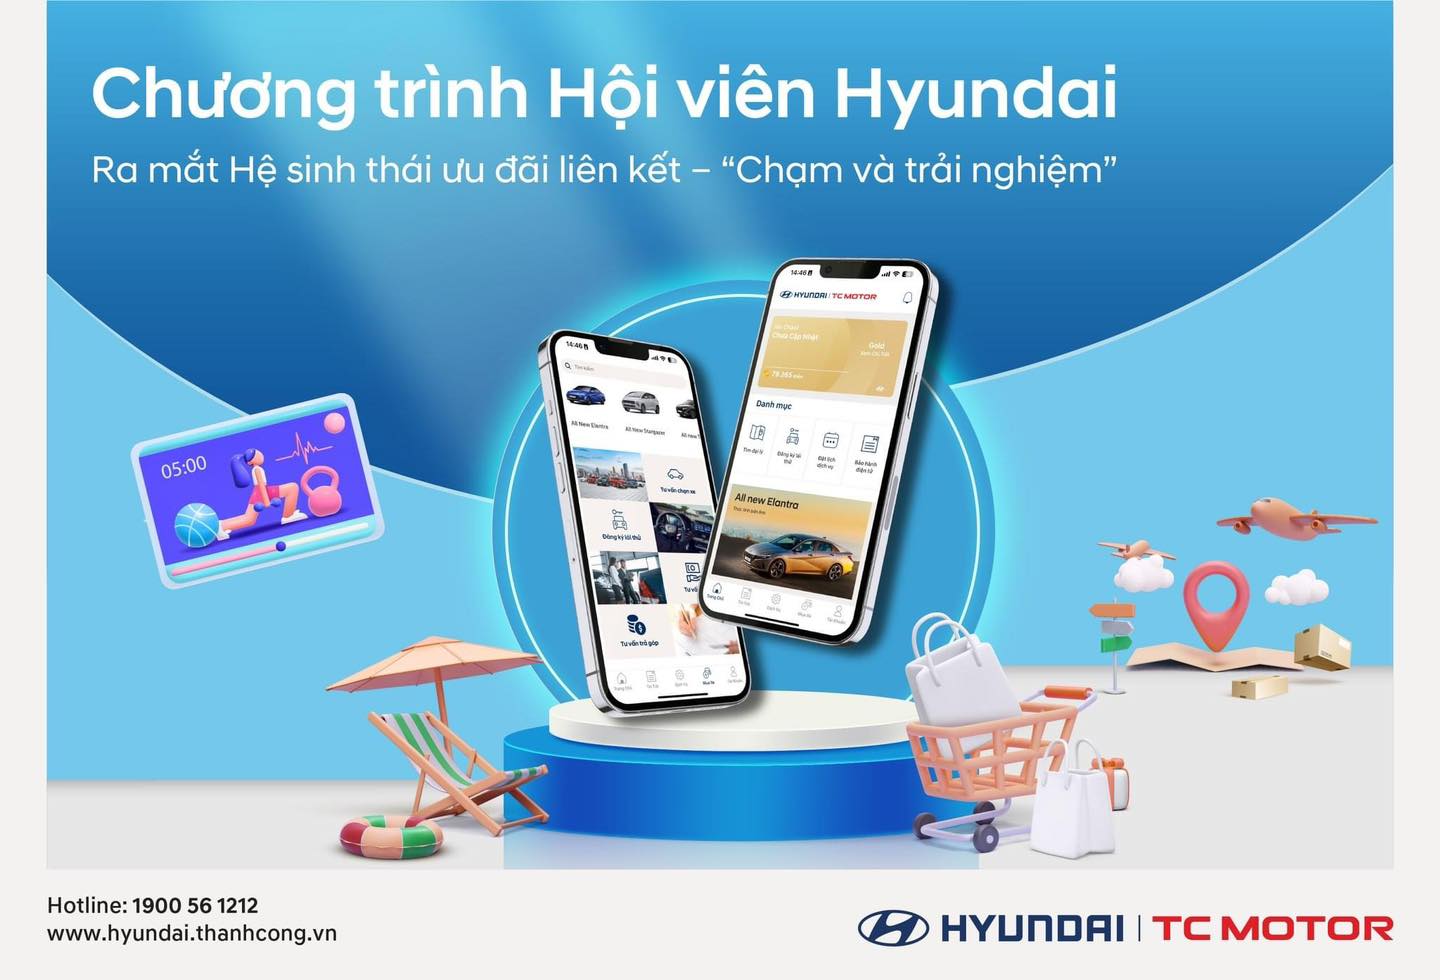 Chương trình Hội viên Hyundai ra mắt hệ sinh thái ưu đãi liên kết “Chạm và trải nghiệm” trên ứng dụng Hyundai ME!